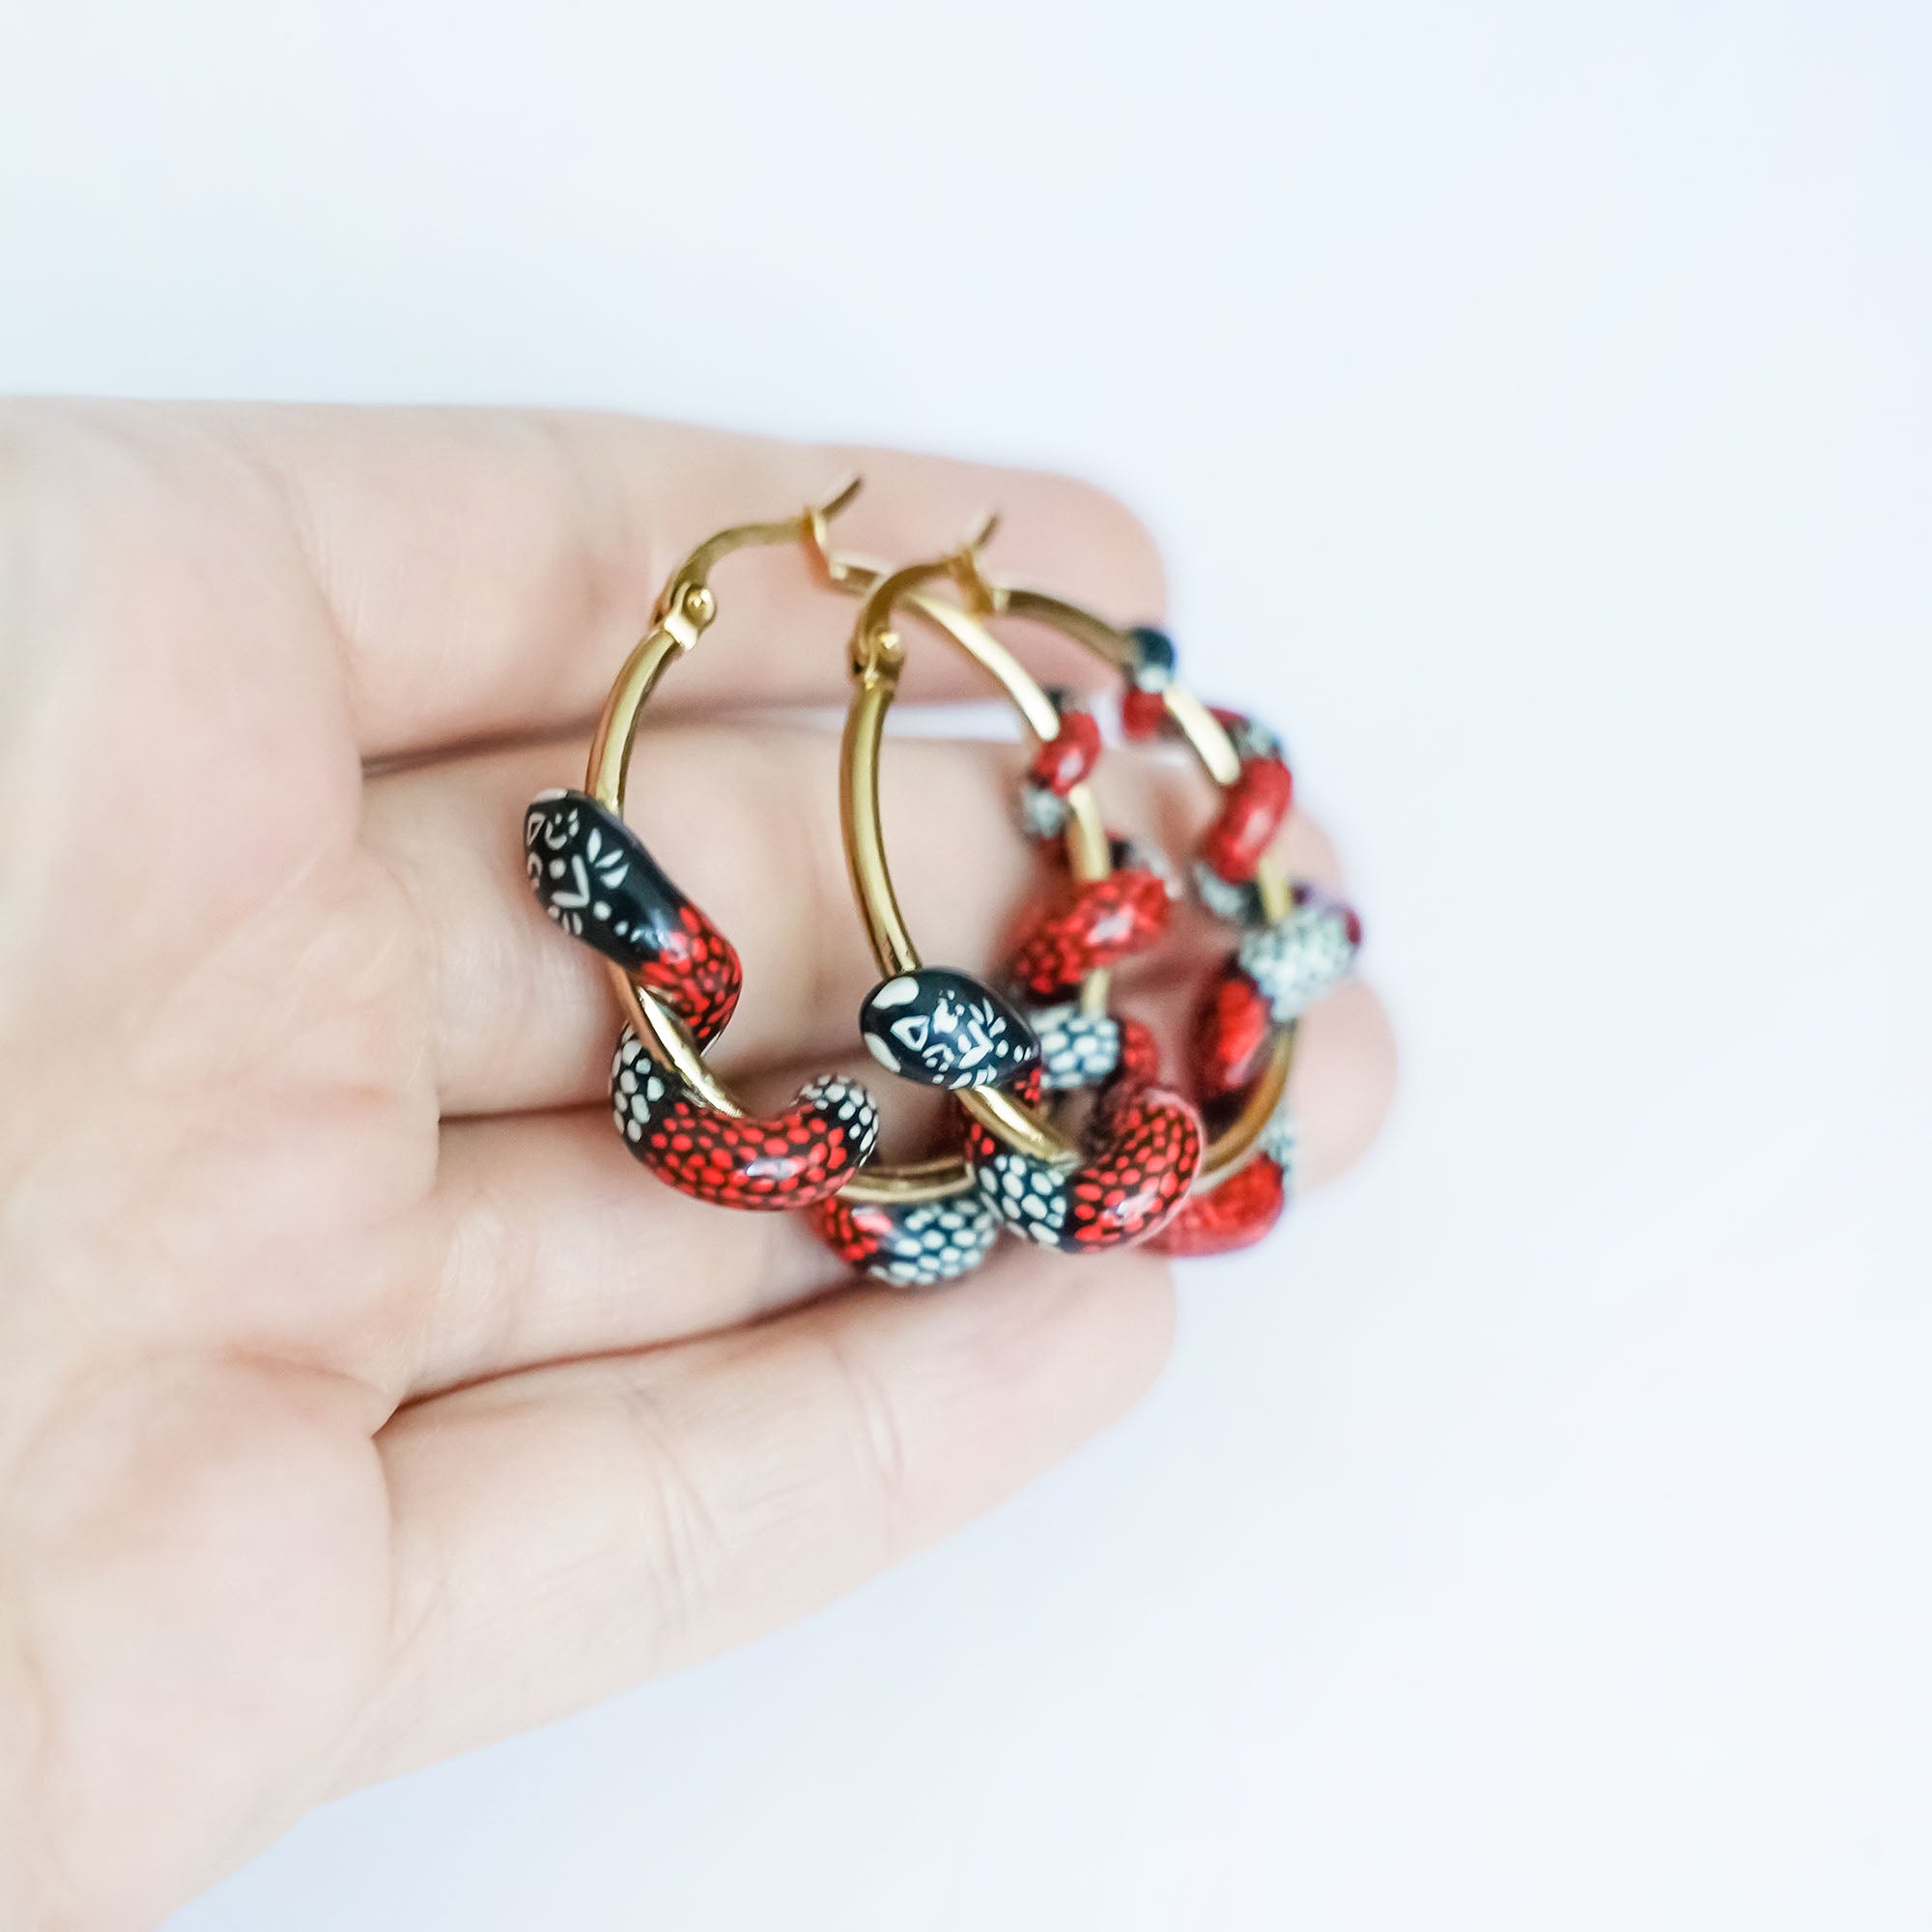 Coral snake earrings